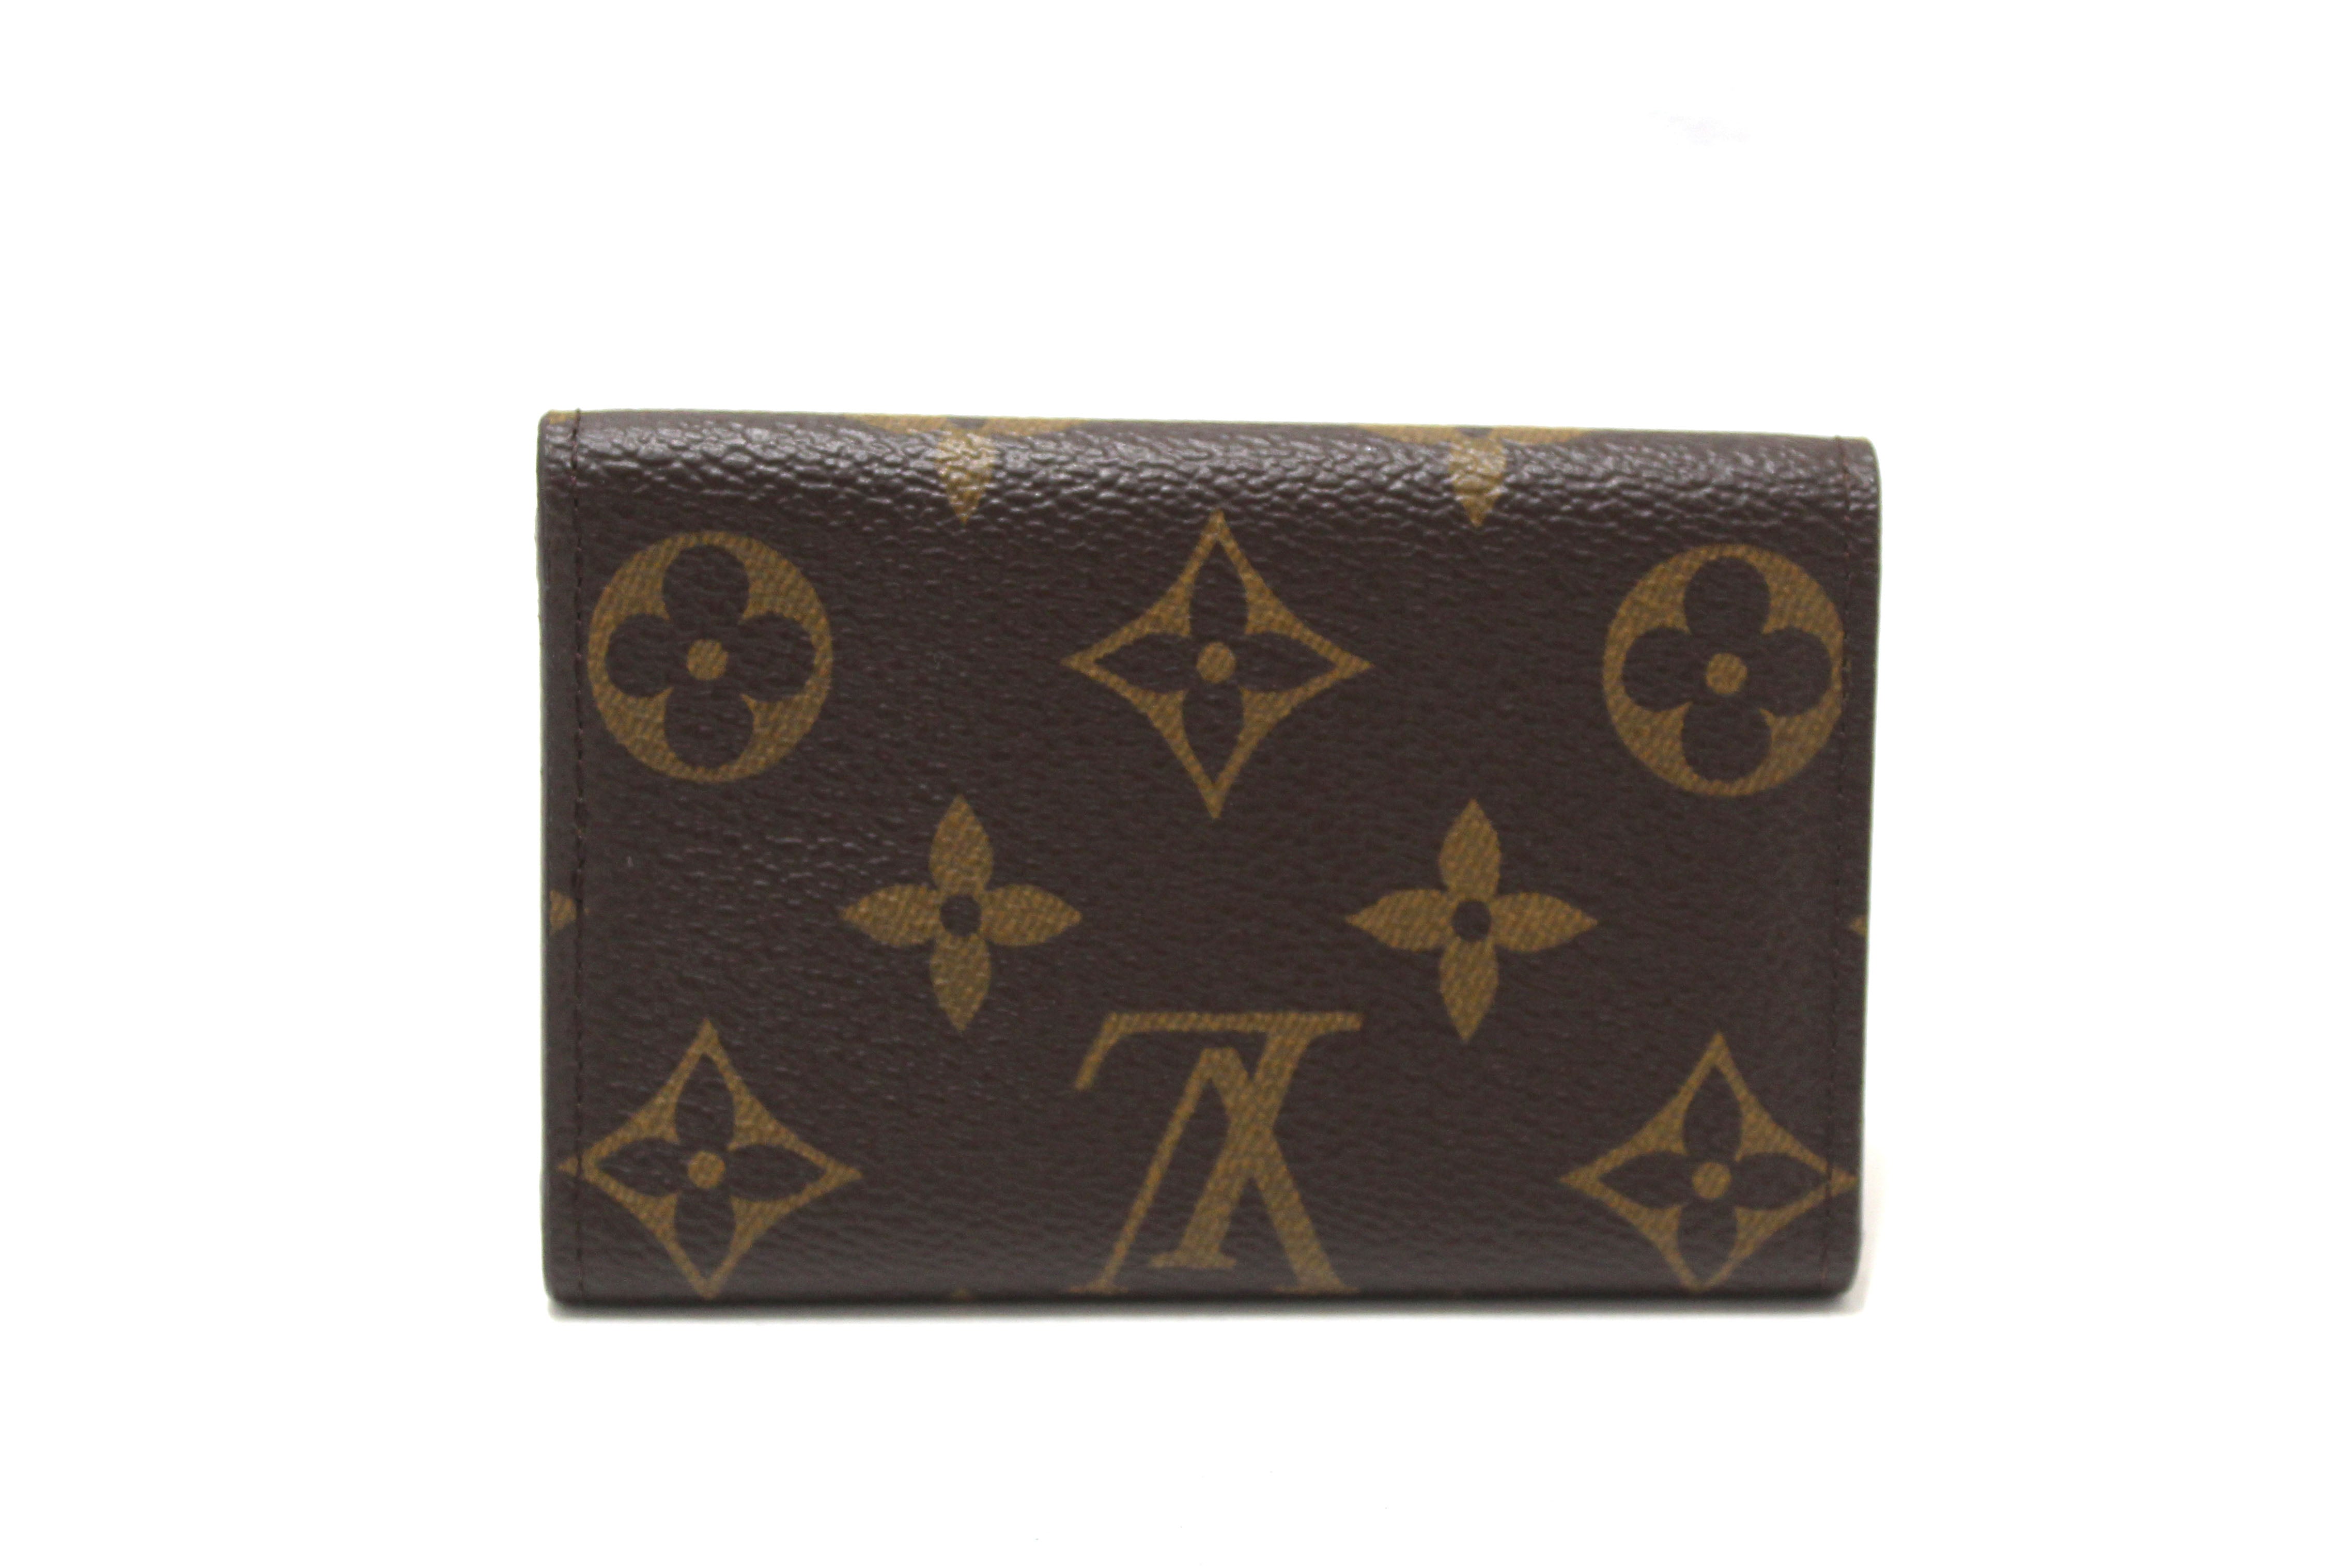 Authentic Louis Vuitton Classic Brown Monogram Canvas 6 Key Holder